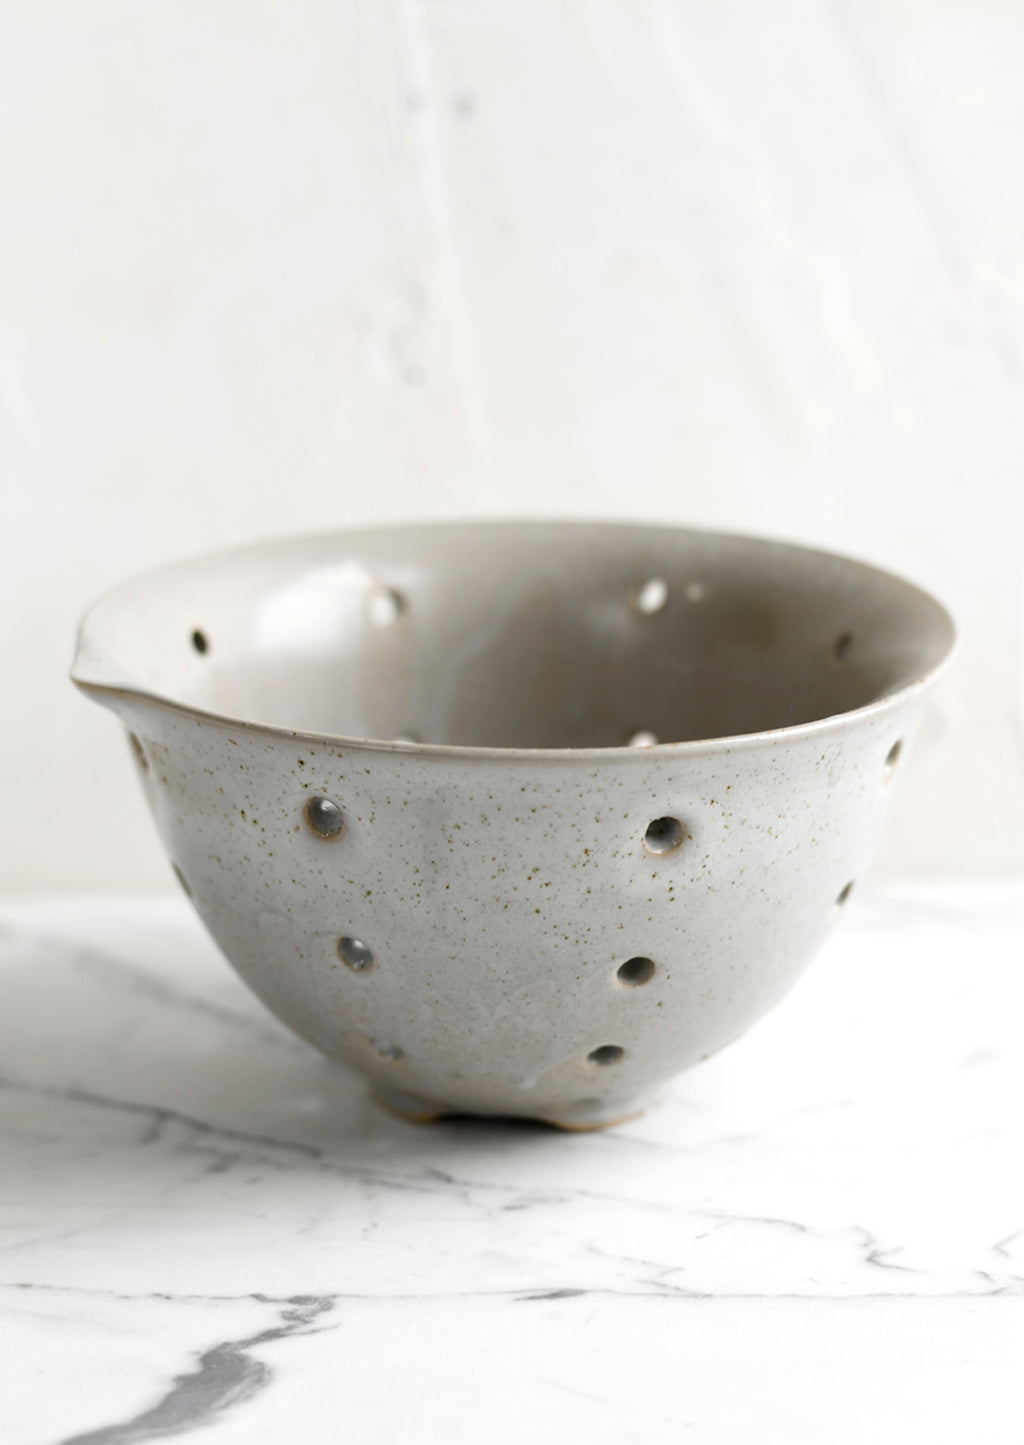 Greige: A greige ceramic stoneware colander.